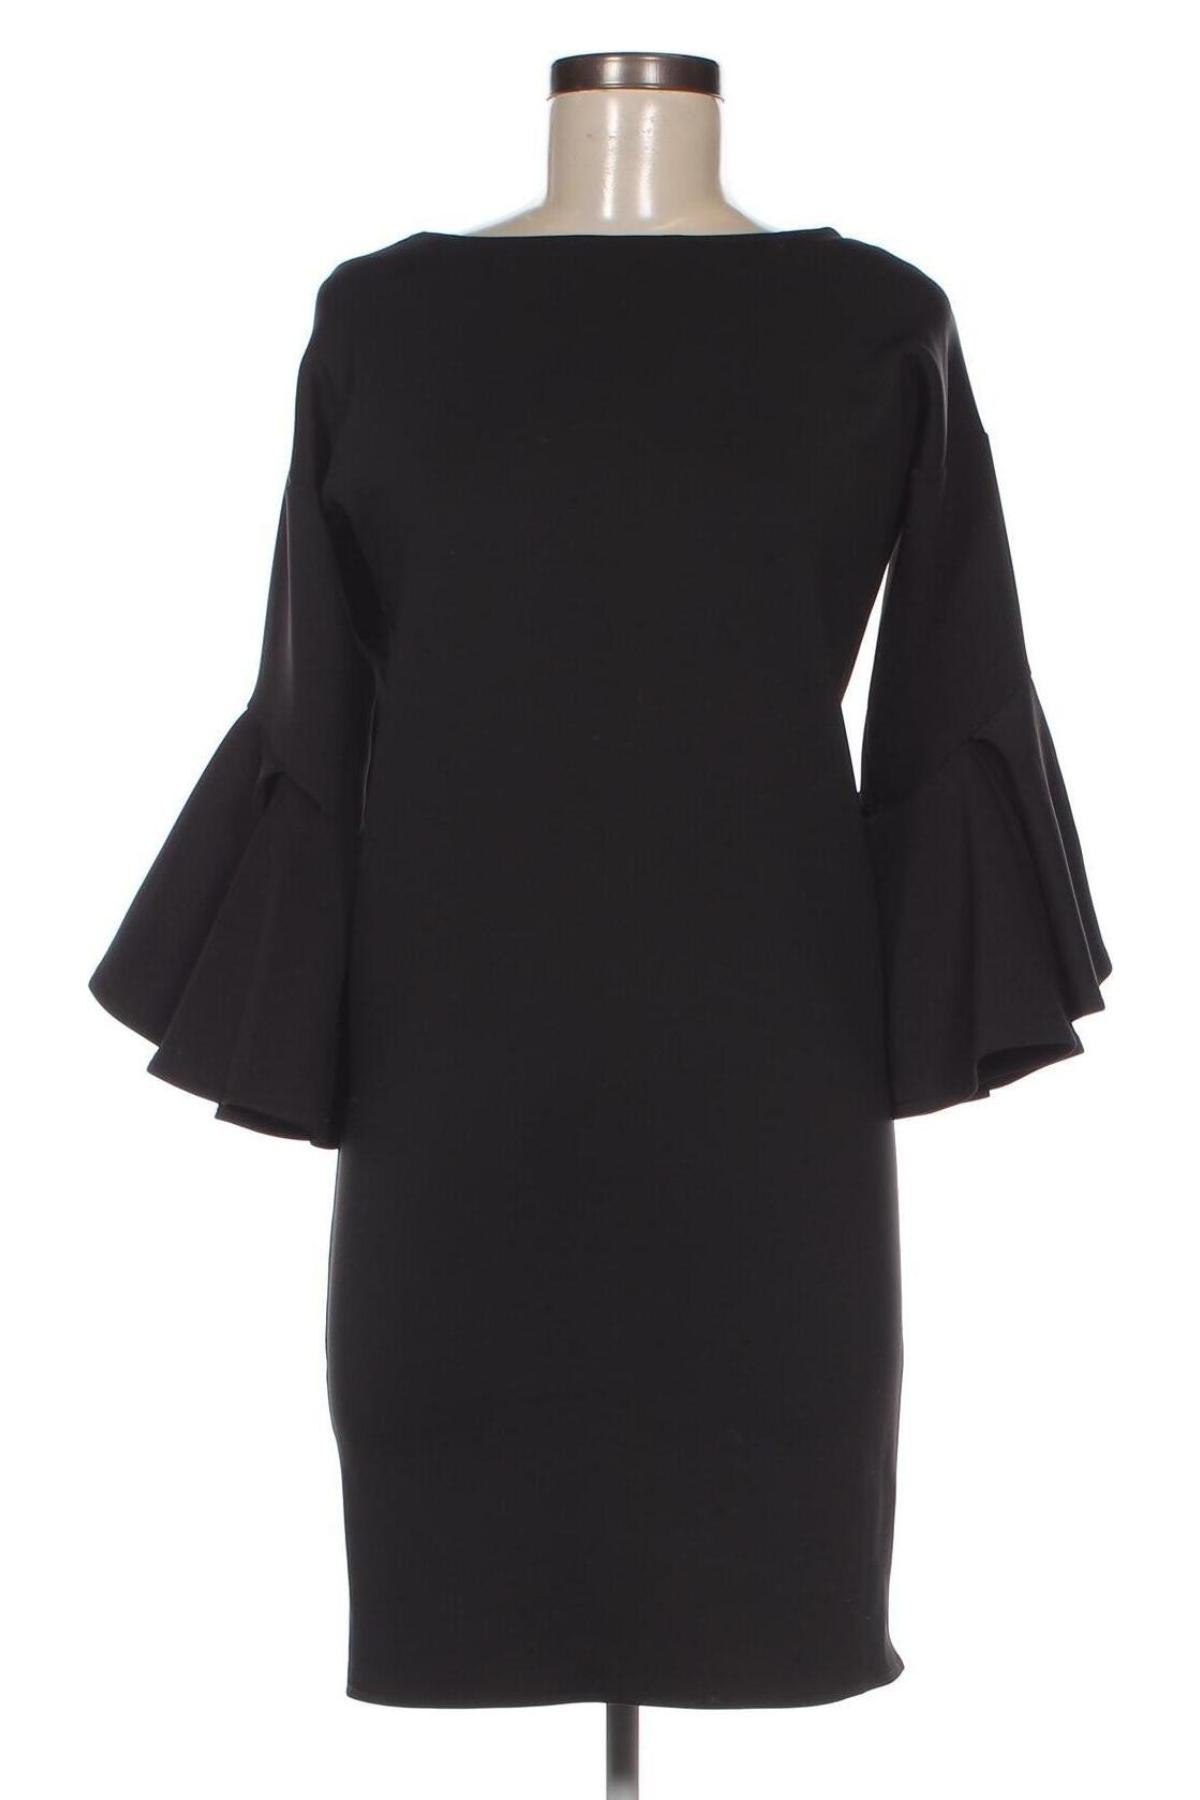 Φόρεμα Zee Lane, Μέγεθος S, Χρώμα Μαύρο, Τιμή 41,33 €